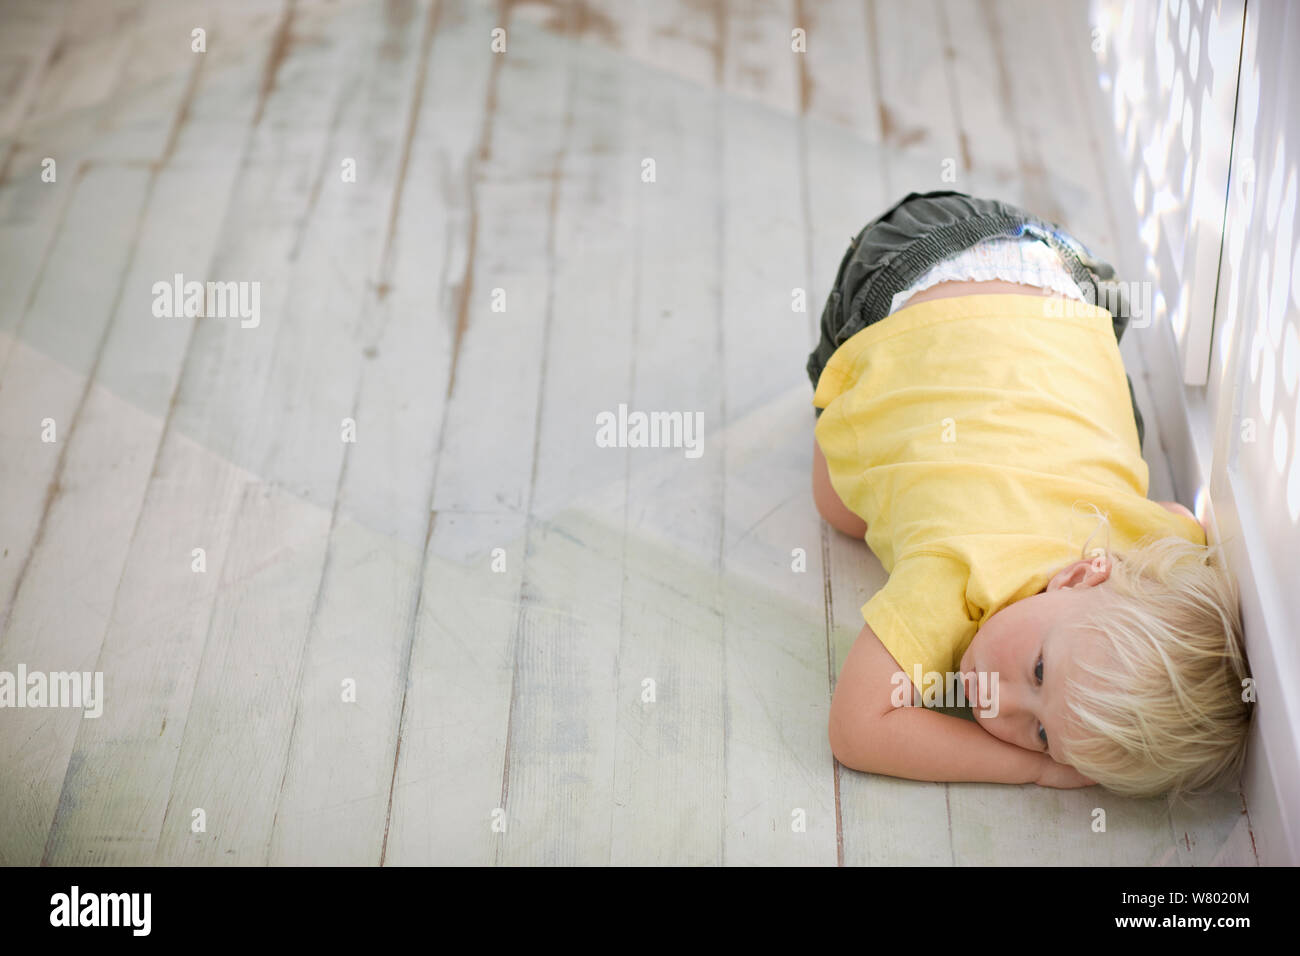 Junge zusammengerollt auf dem Boden. Stockfoto